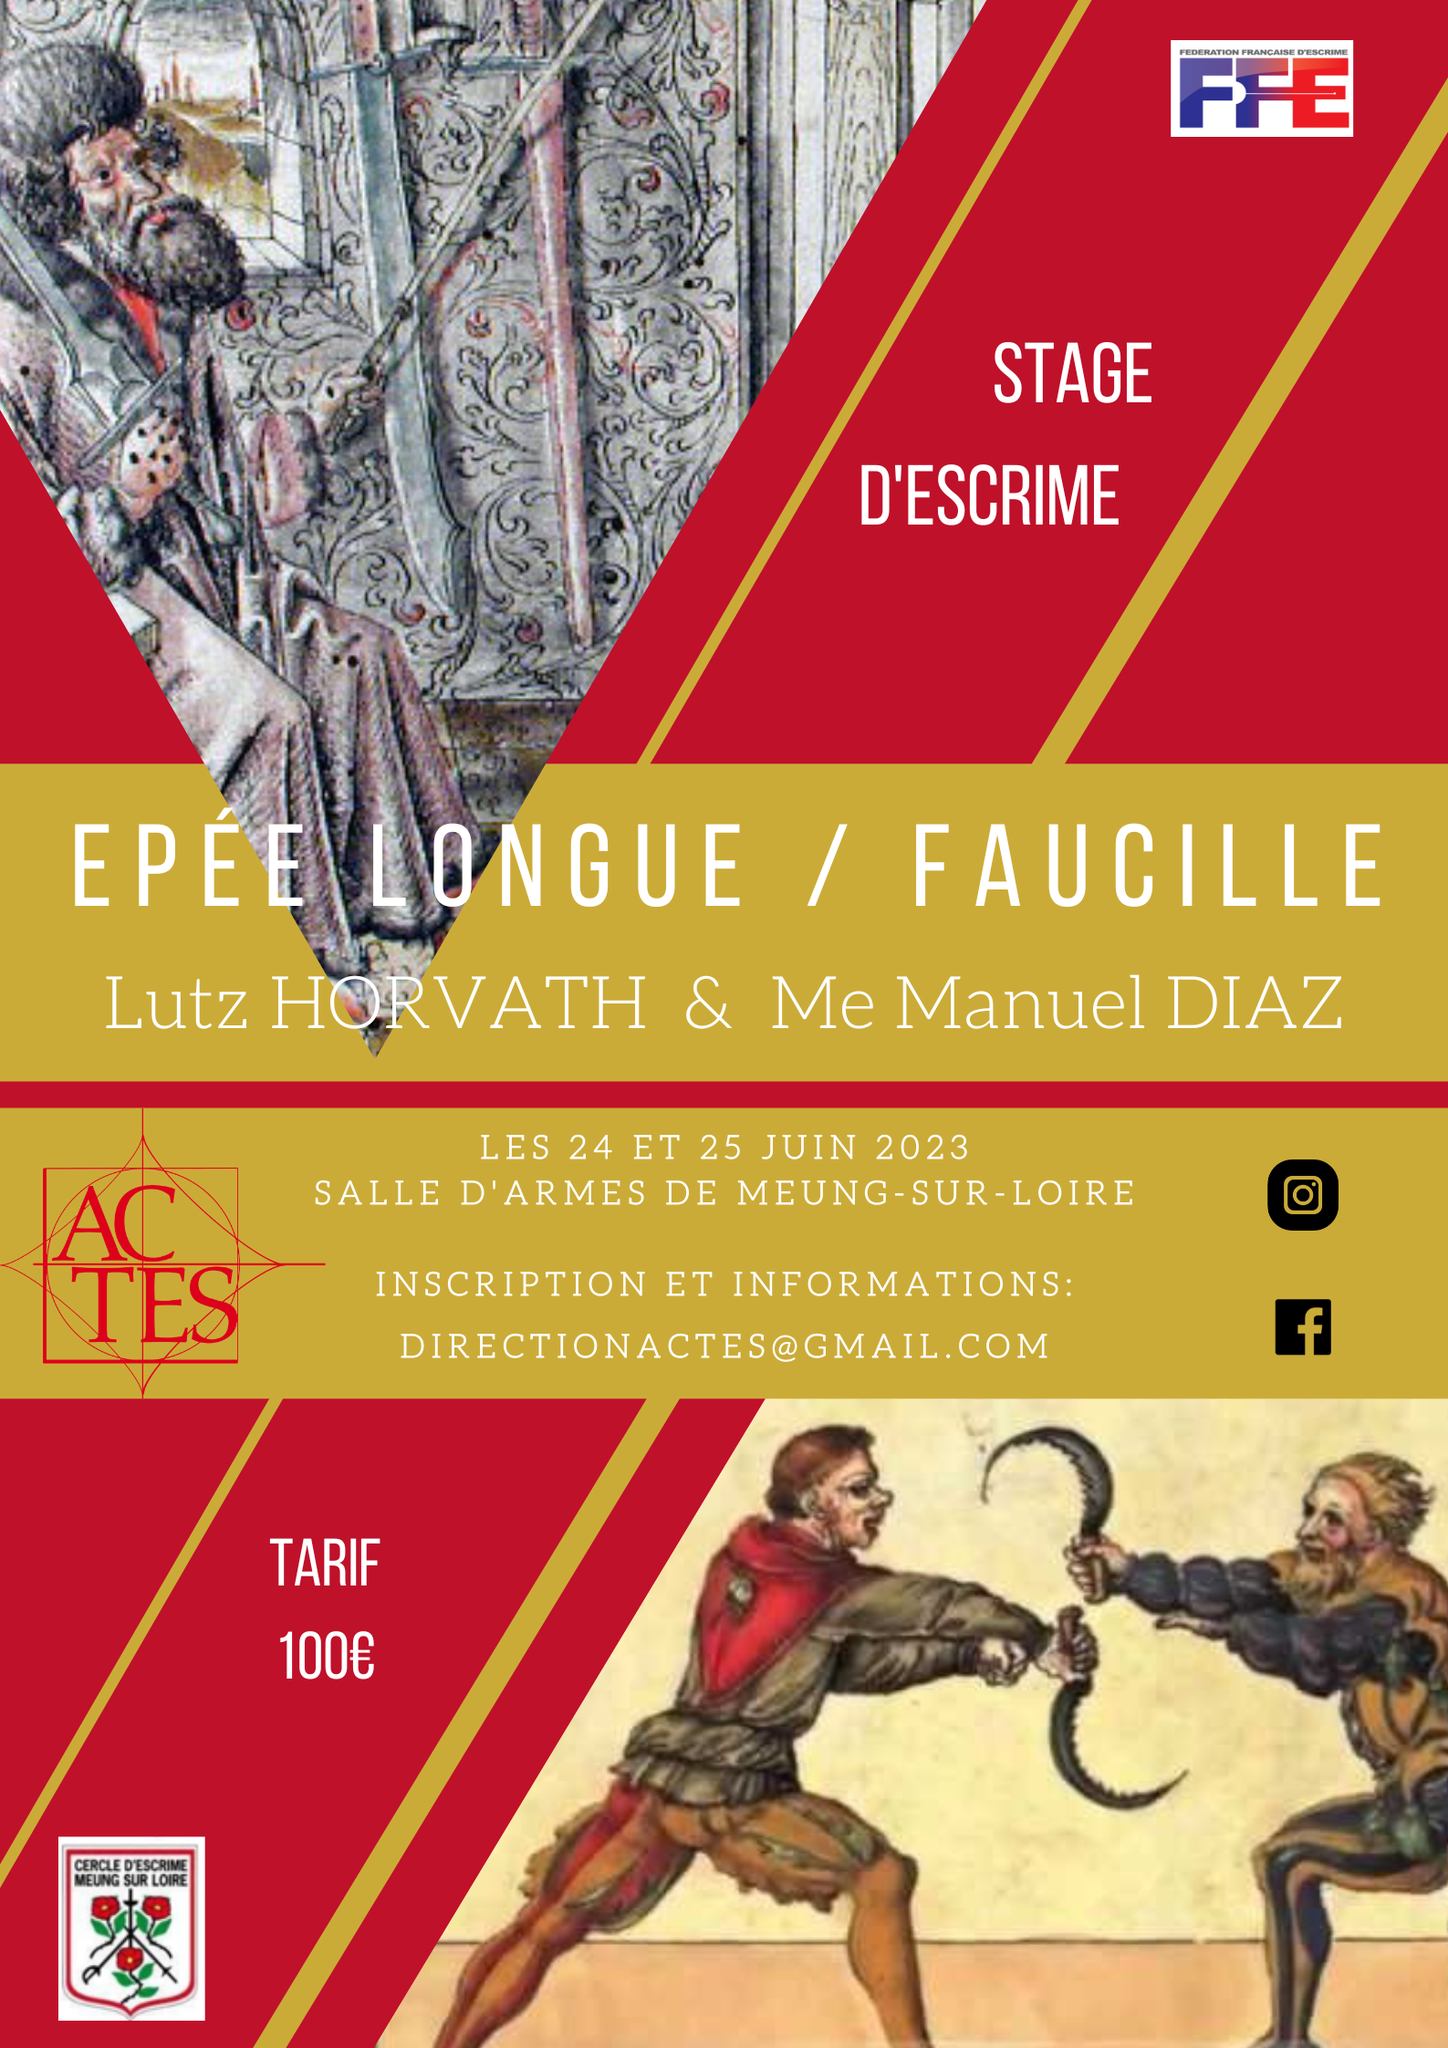 Affiche du stage épée longue et faucille à Meung-sur-Loire les 24 et 25 juin 2023